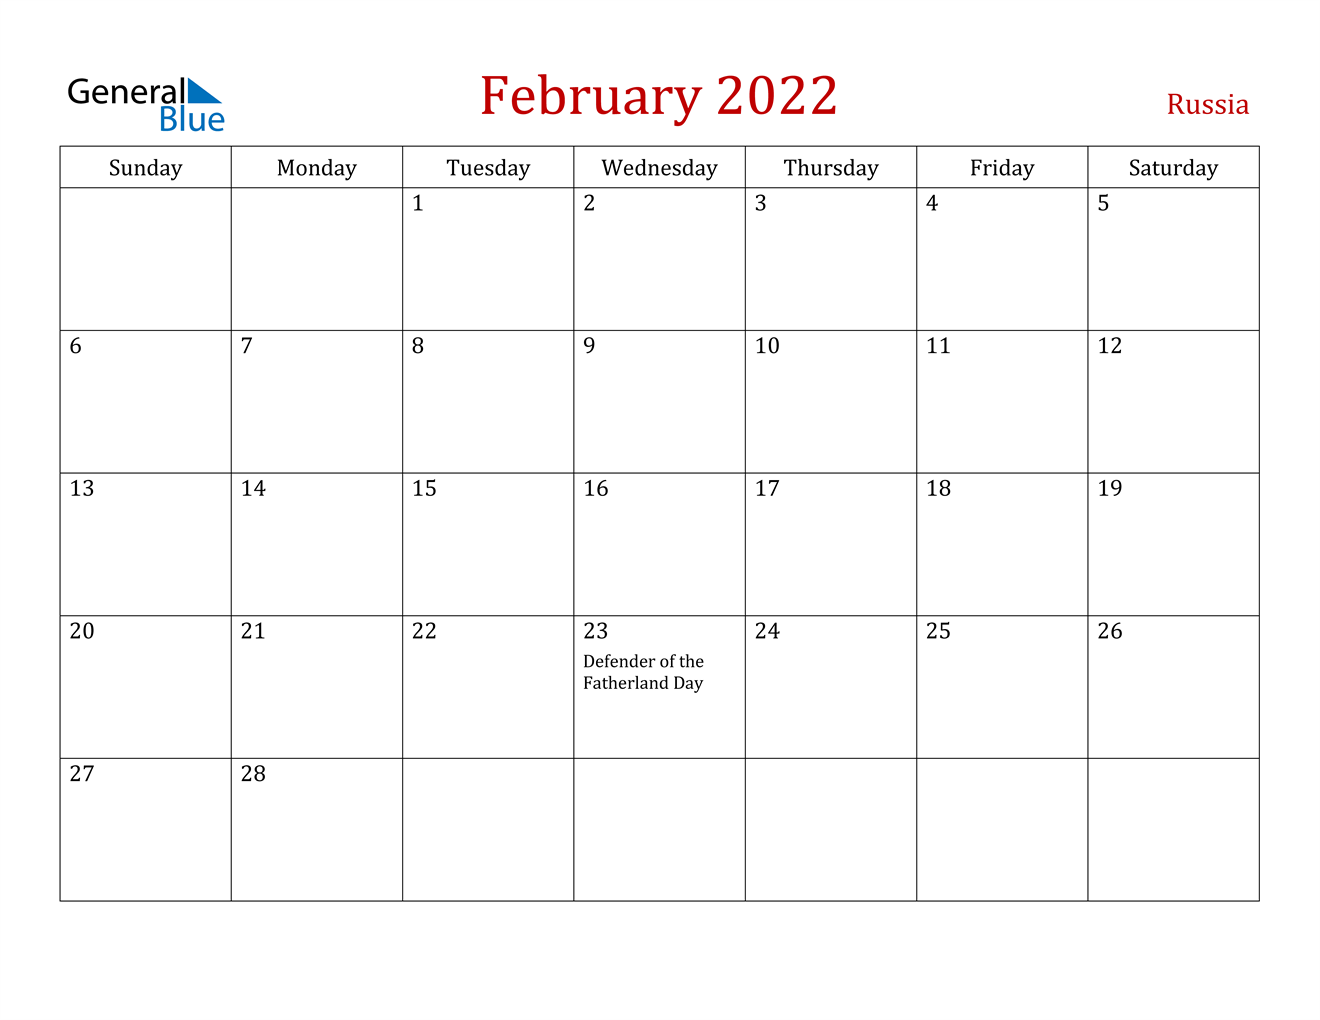 February 2022 Calendar - Russia